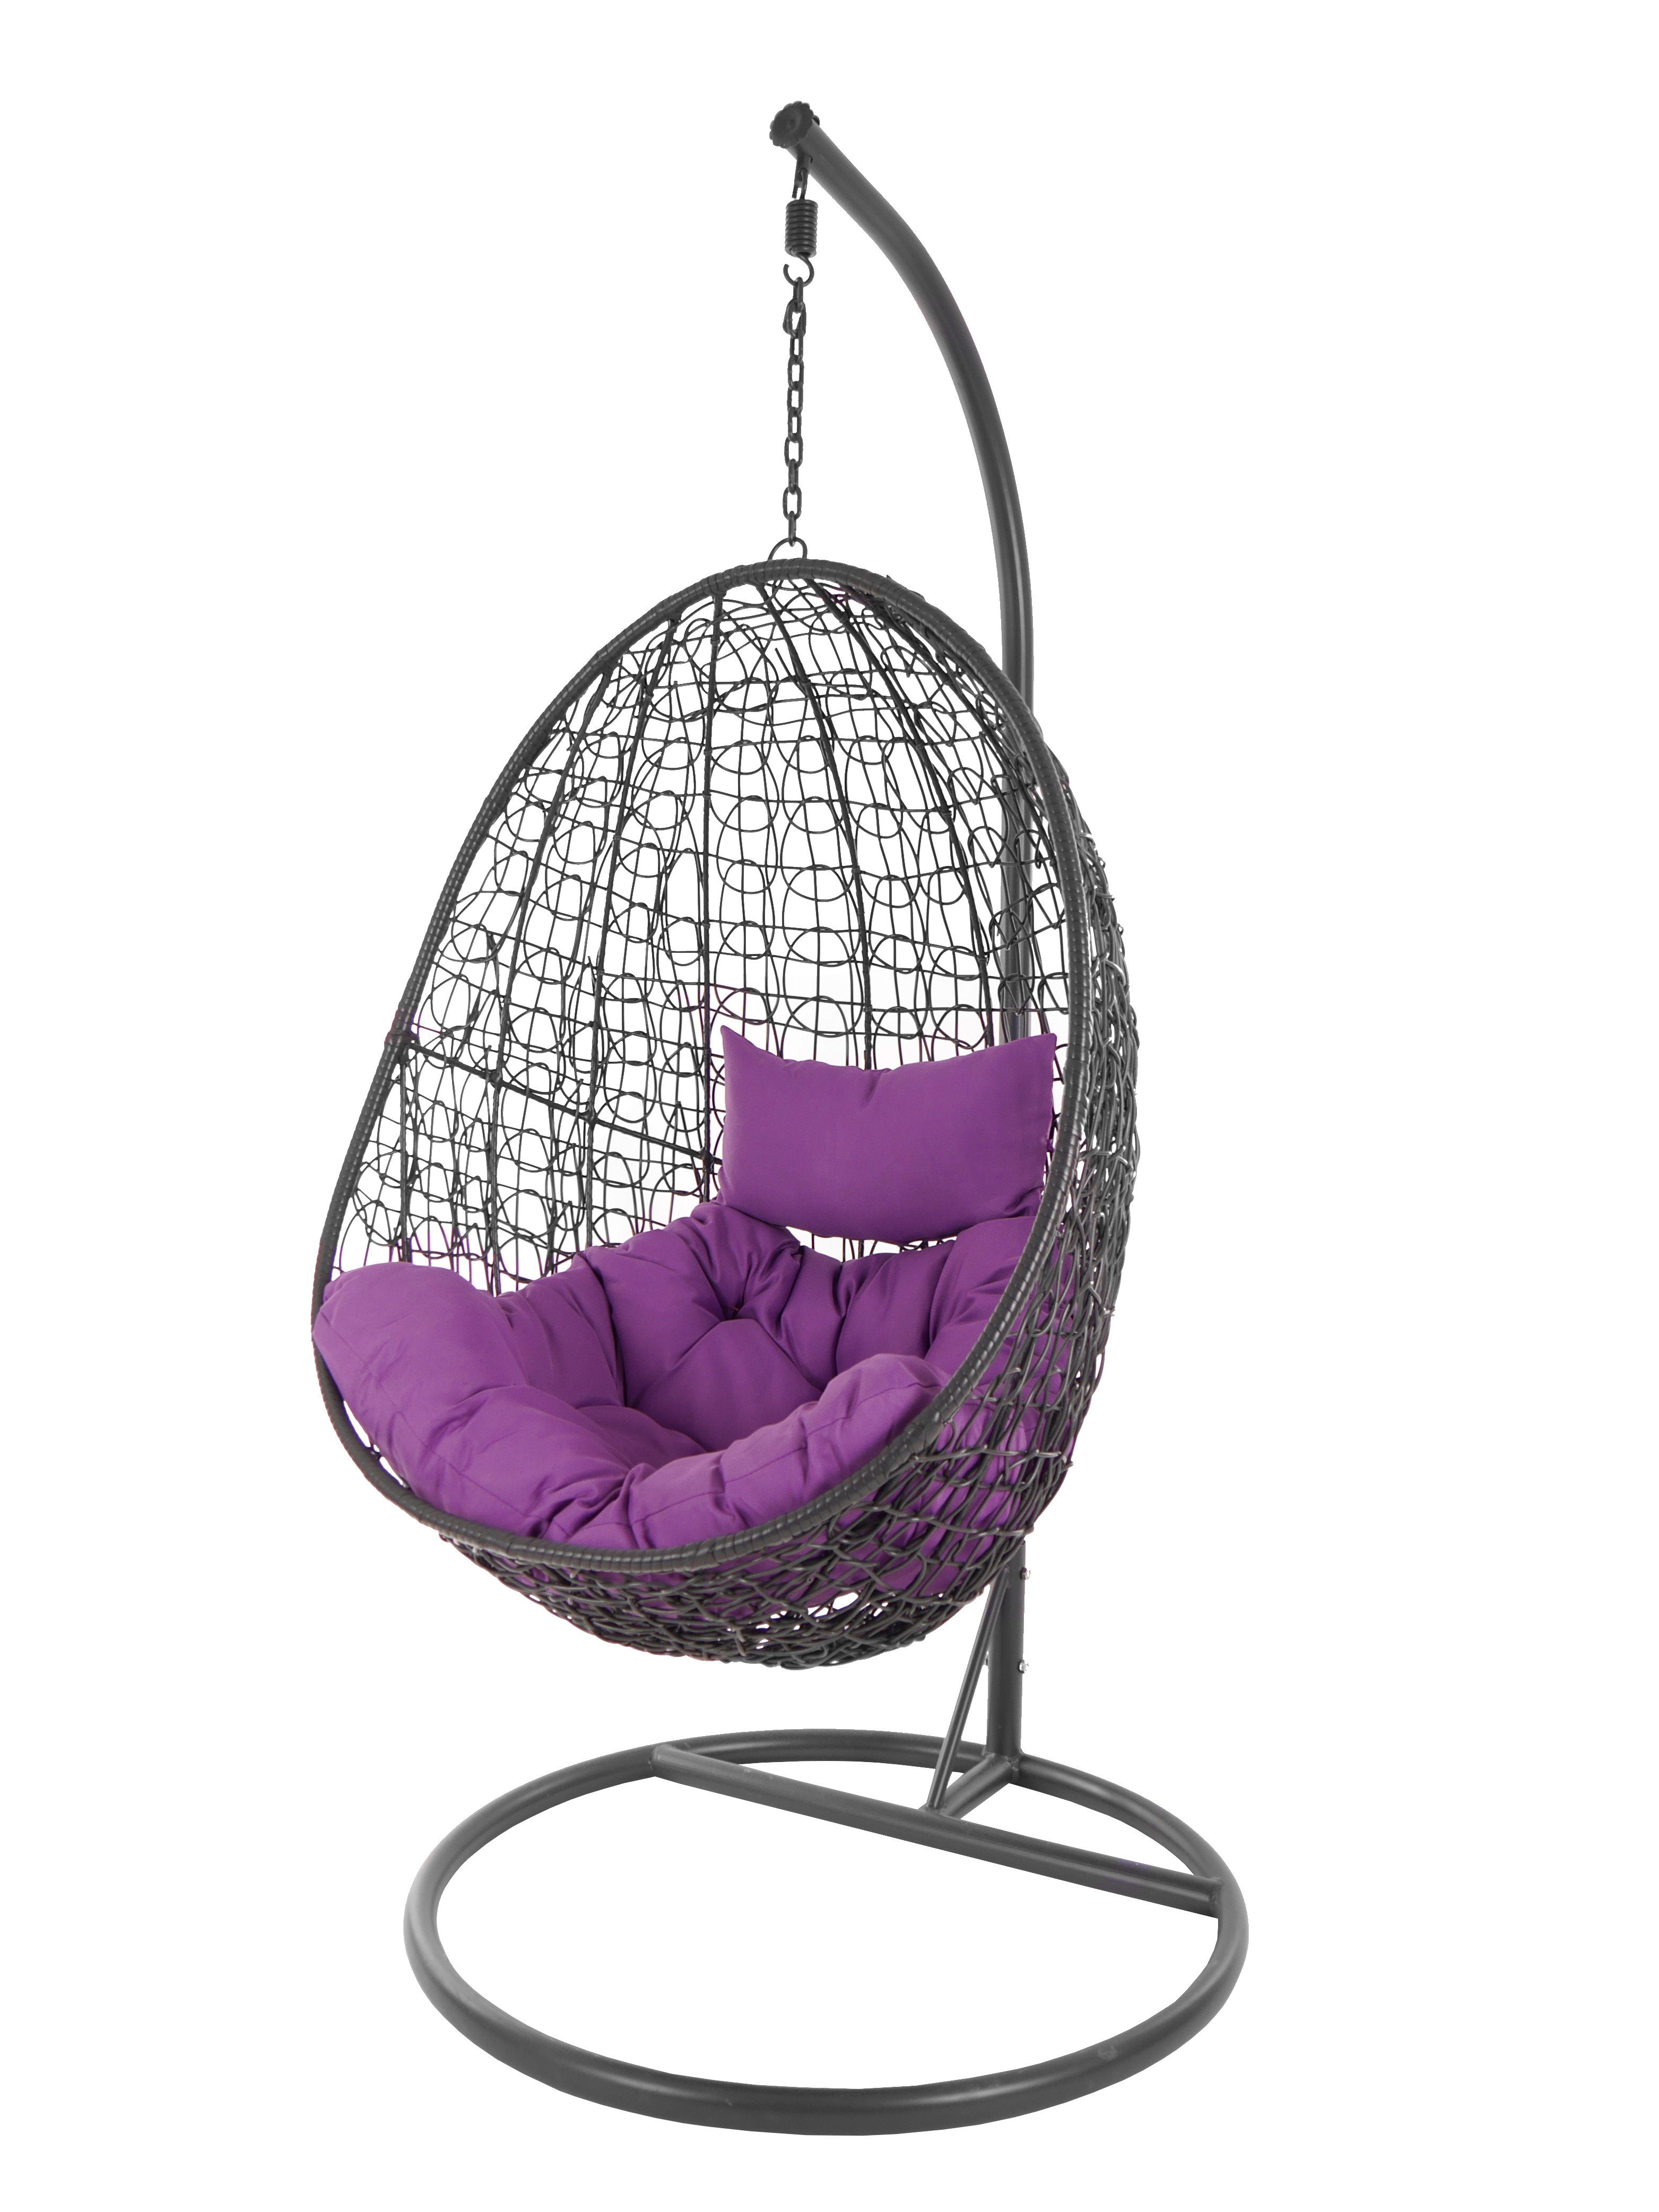 KIDEO Hängesessel moderner violet) Gestell (4050 lila Loungemöbel Chair, Kissen, anthrazit, Schwebesessel und mit Capdepera Hängesessel Swing